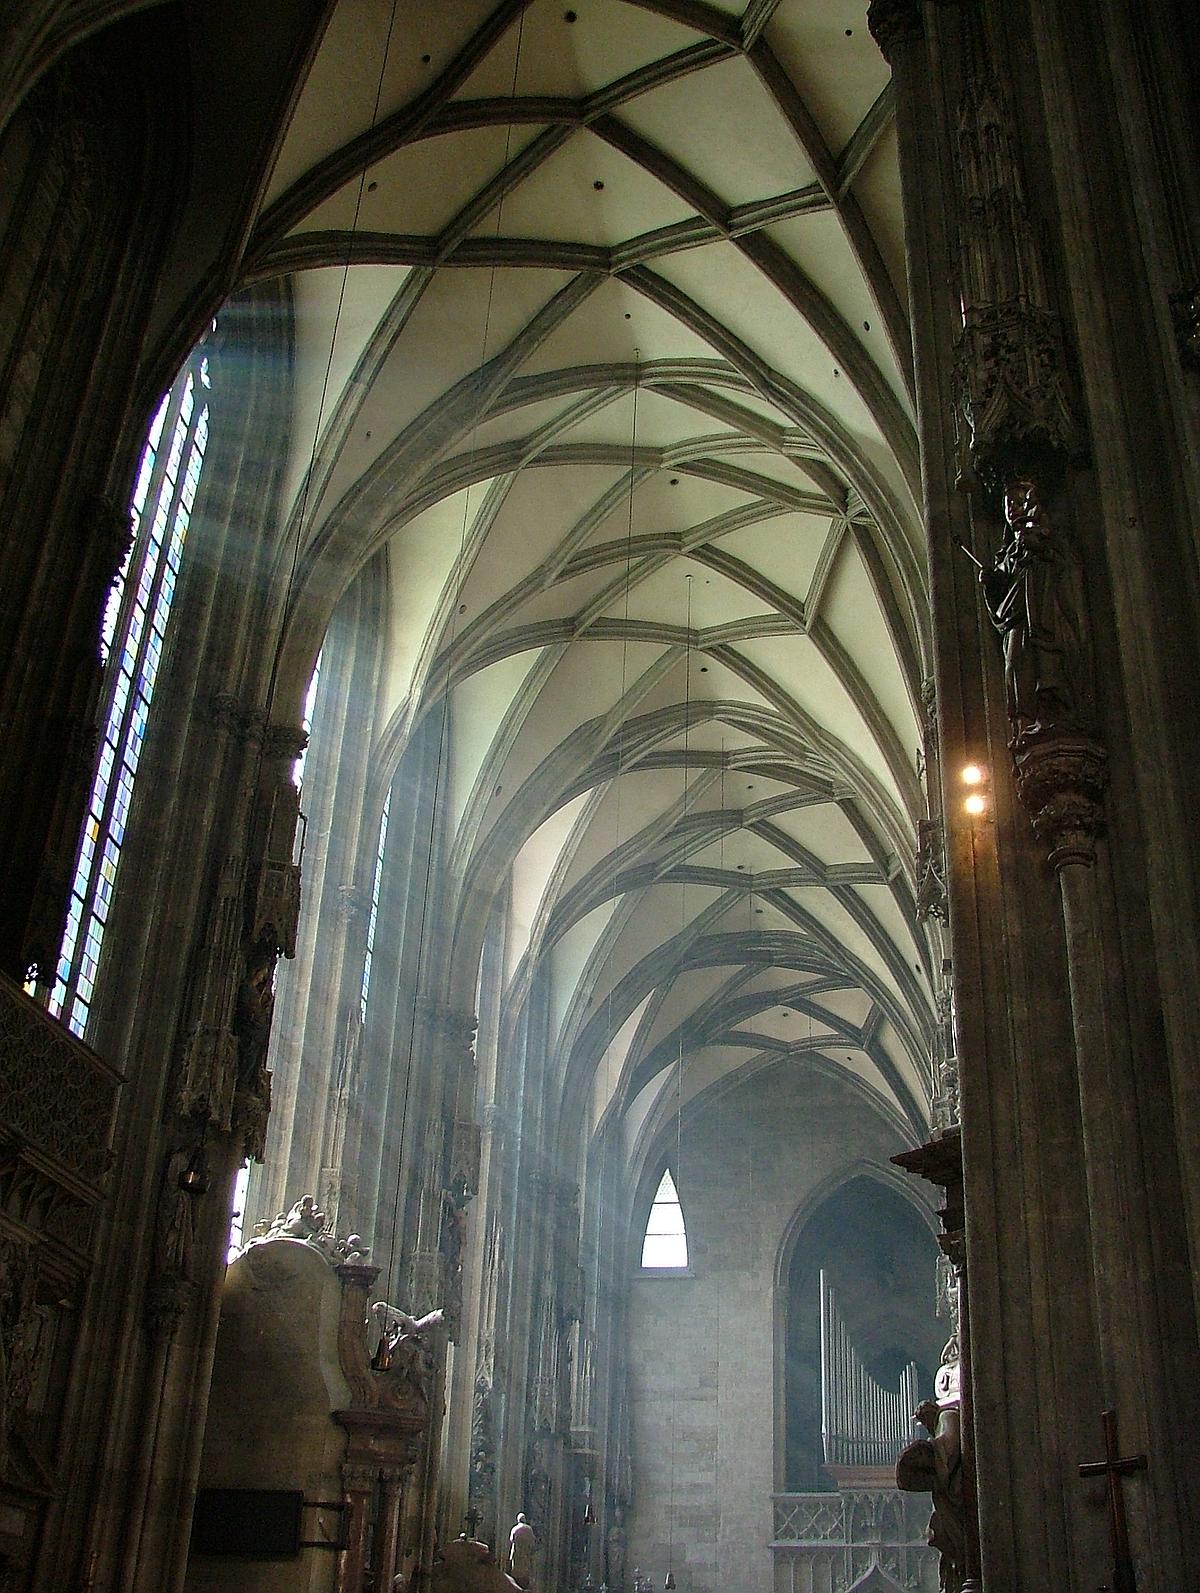 Gewölbe in einem Seitenschiff des Stephansdomes - durch die Fenster gelangt Licht in die Kirche.